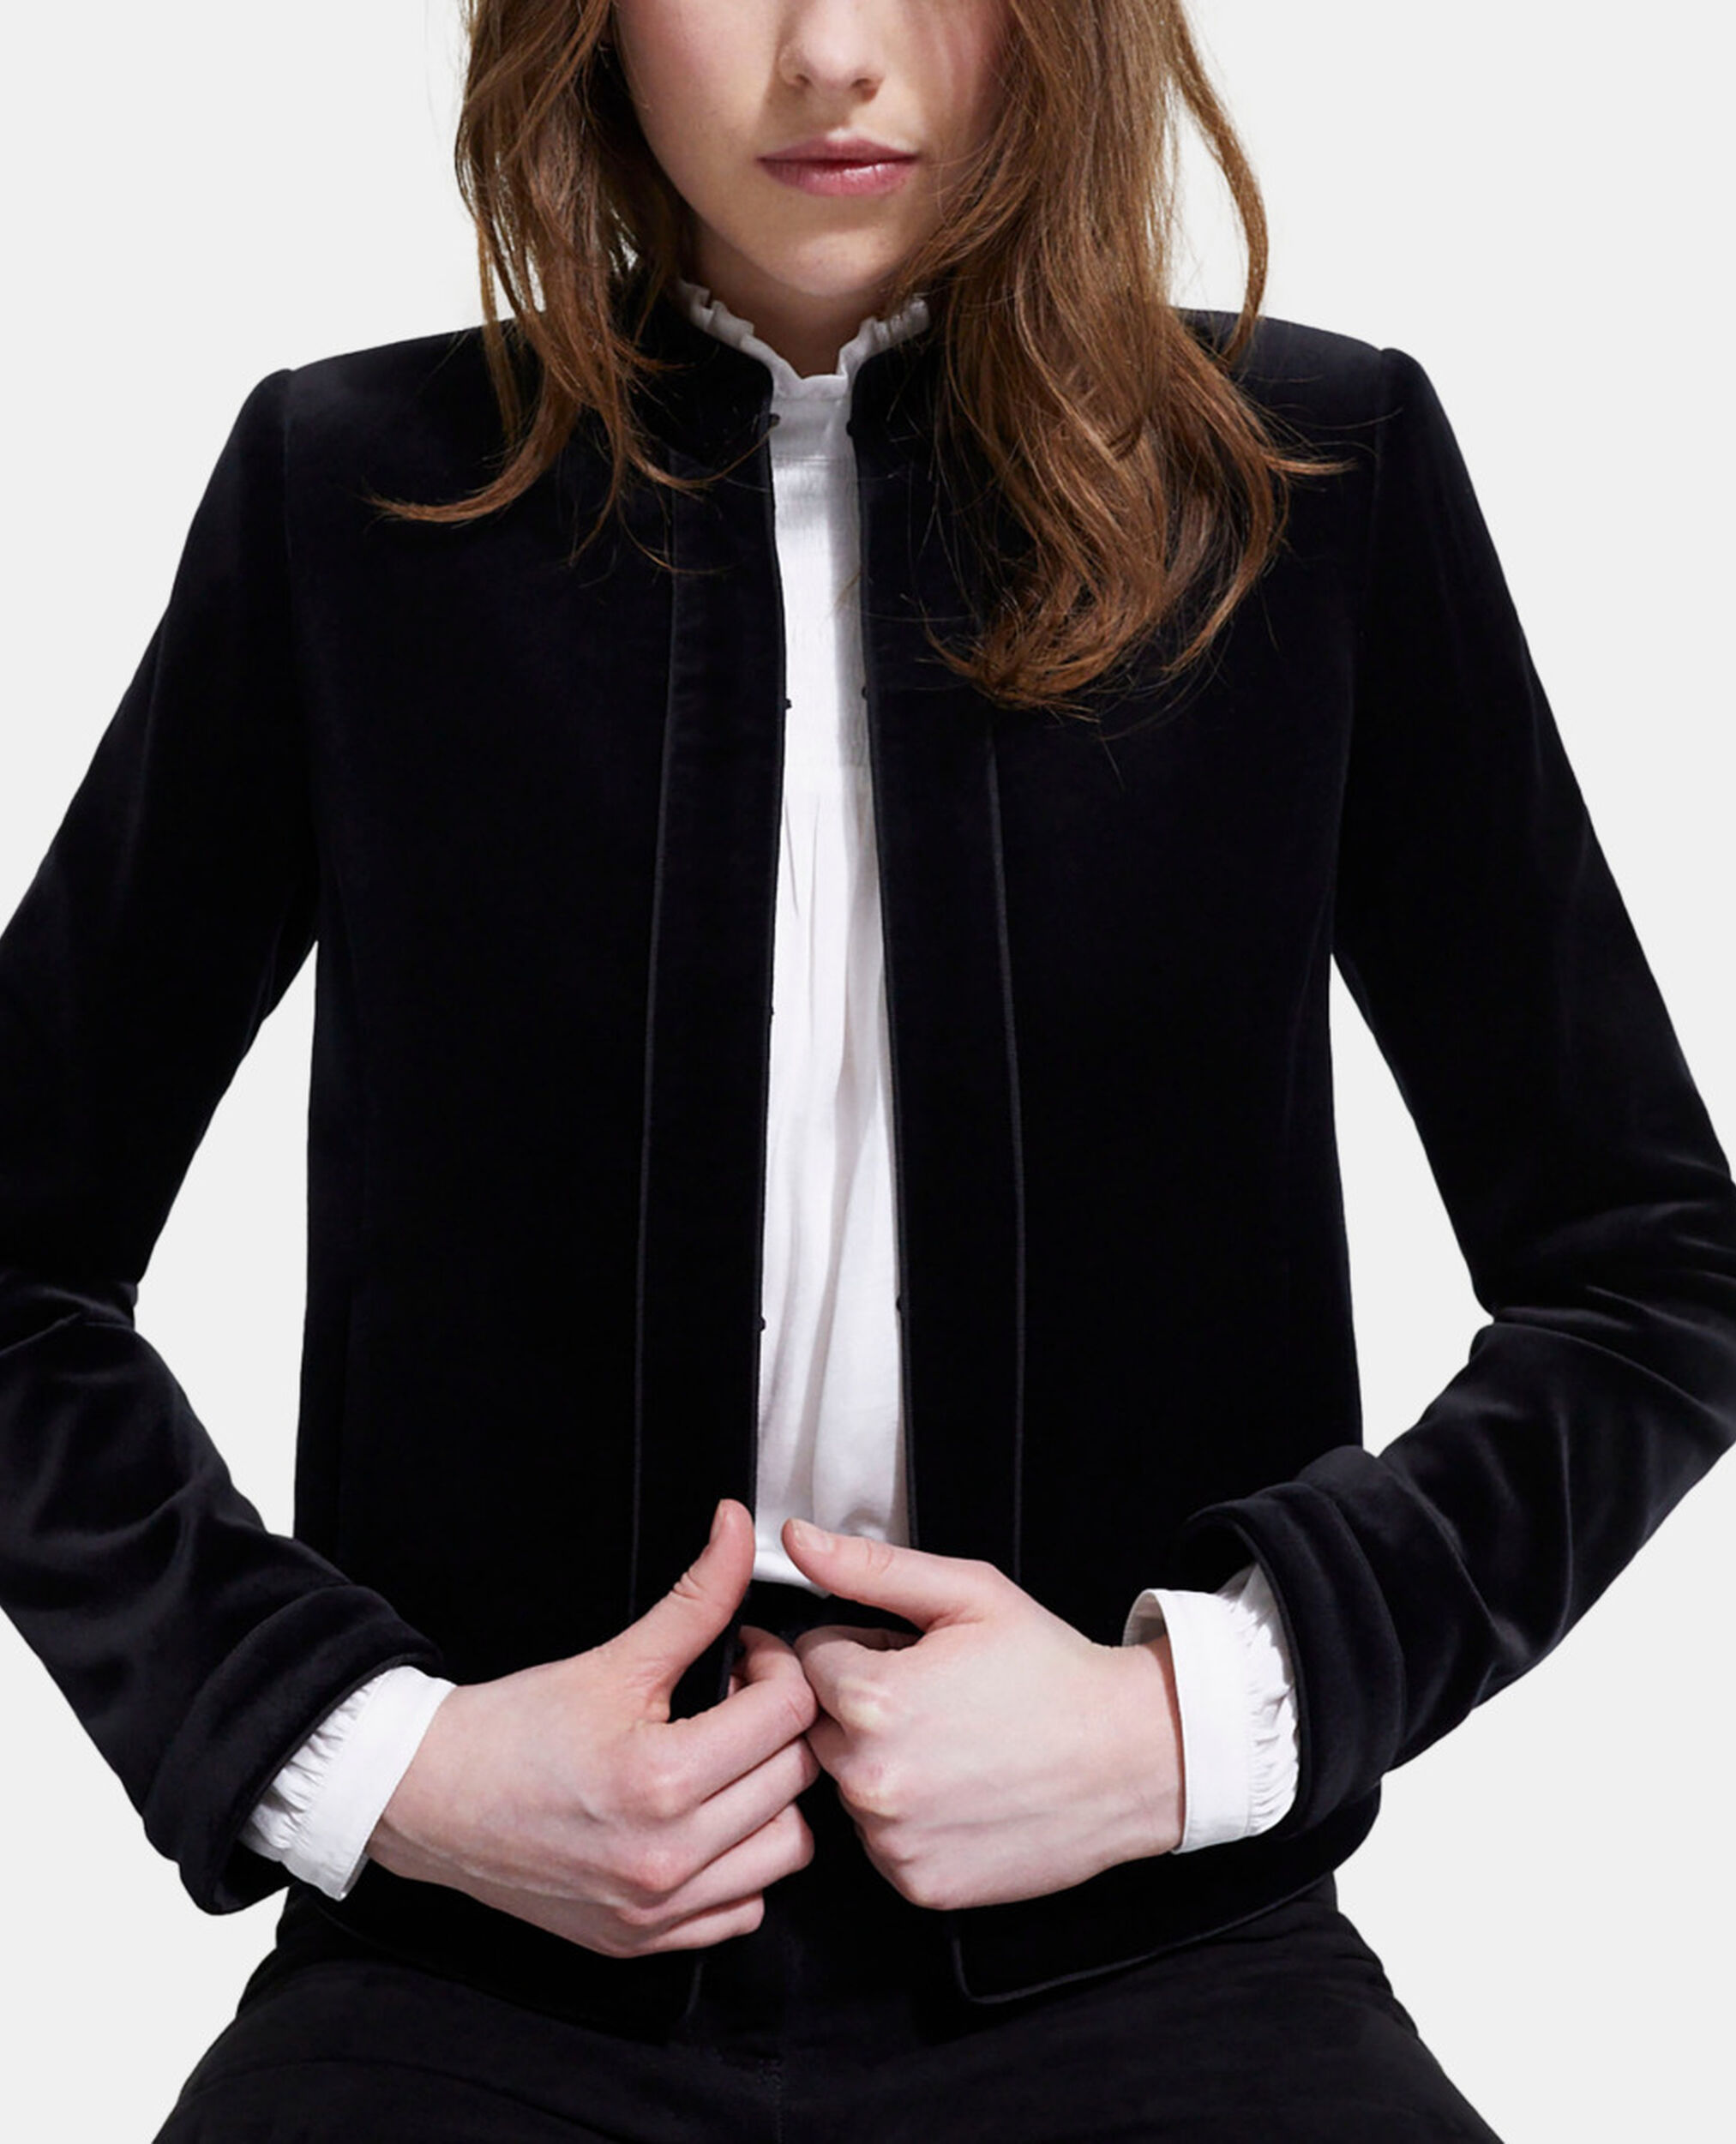 Buy Leather Retail Coat Black Winter Wear Velvet Jacket For Women-S at